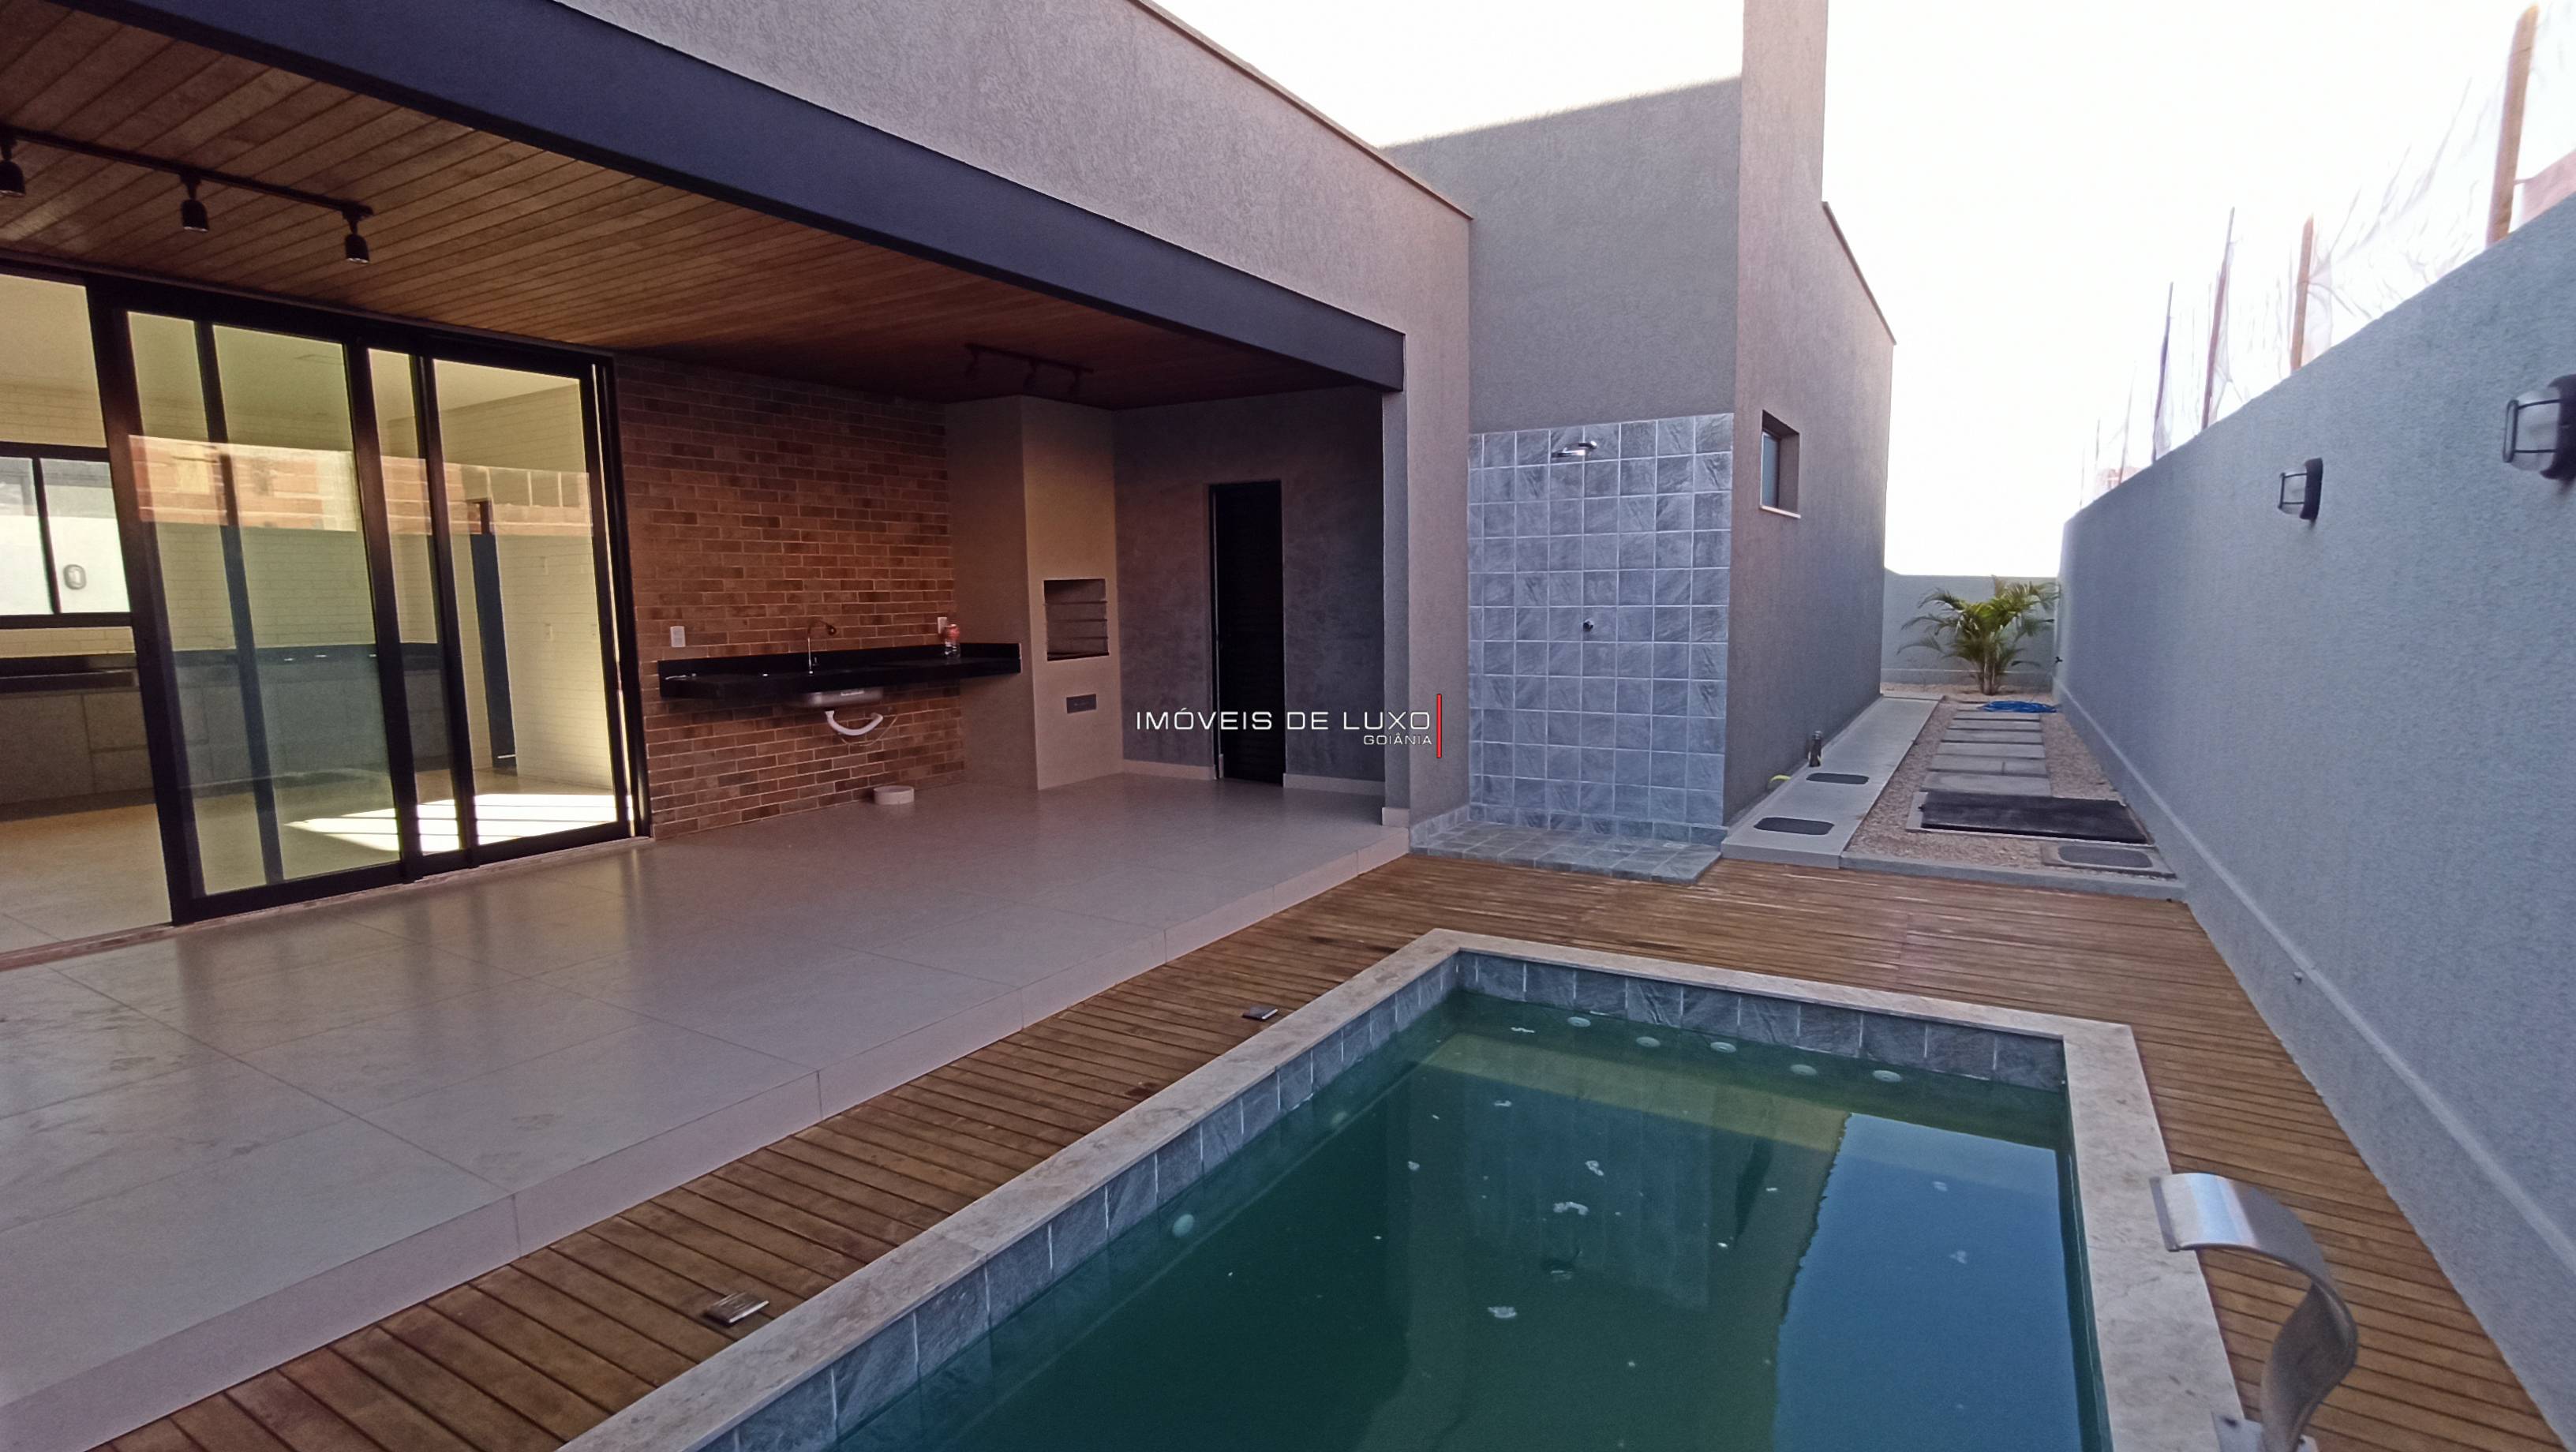 Imóveis de Luxo - Moderna Casa Térrea com 240m2 no Portal do Sol Green 